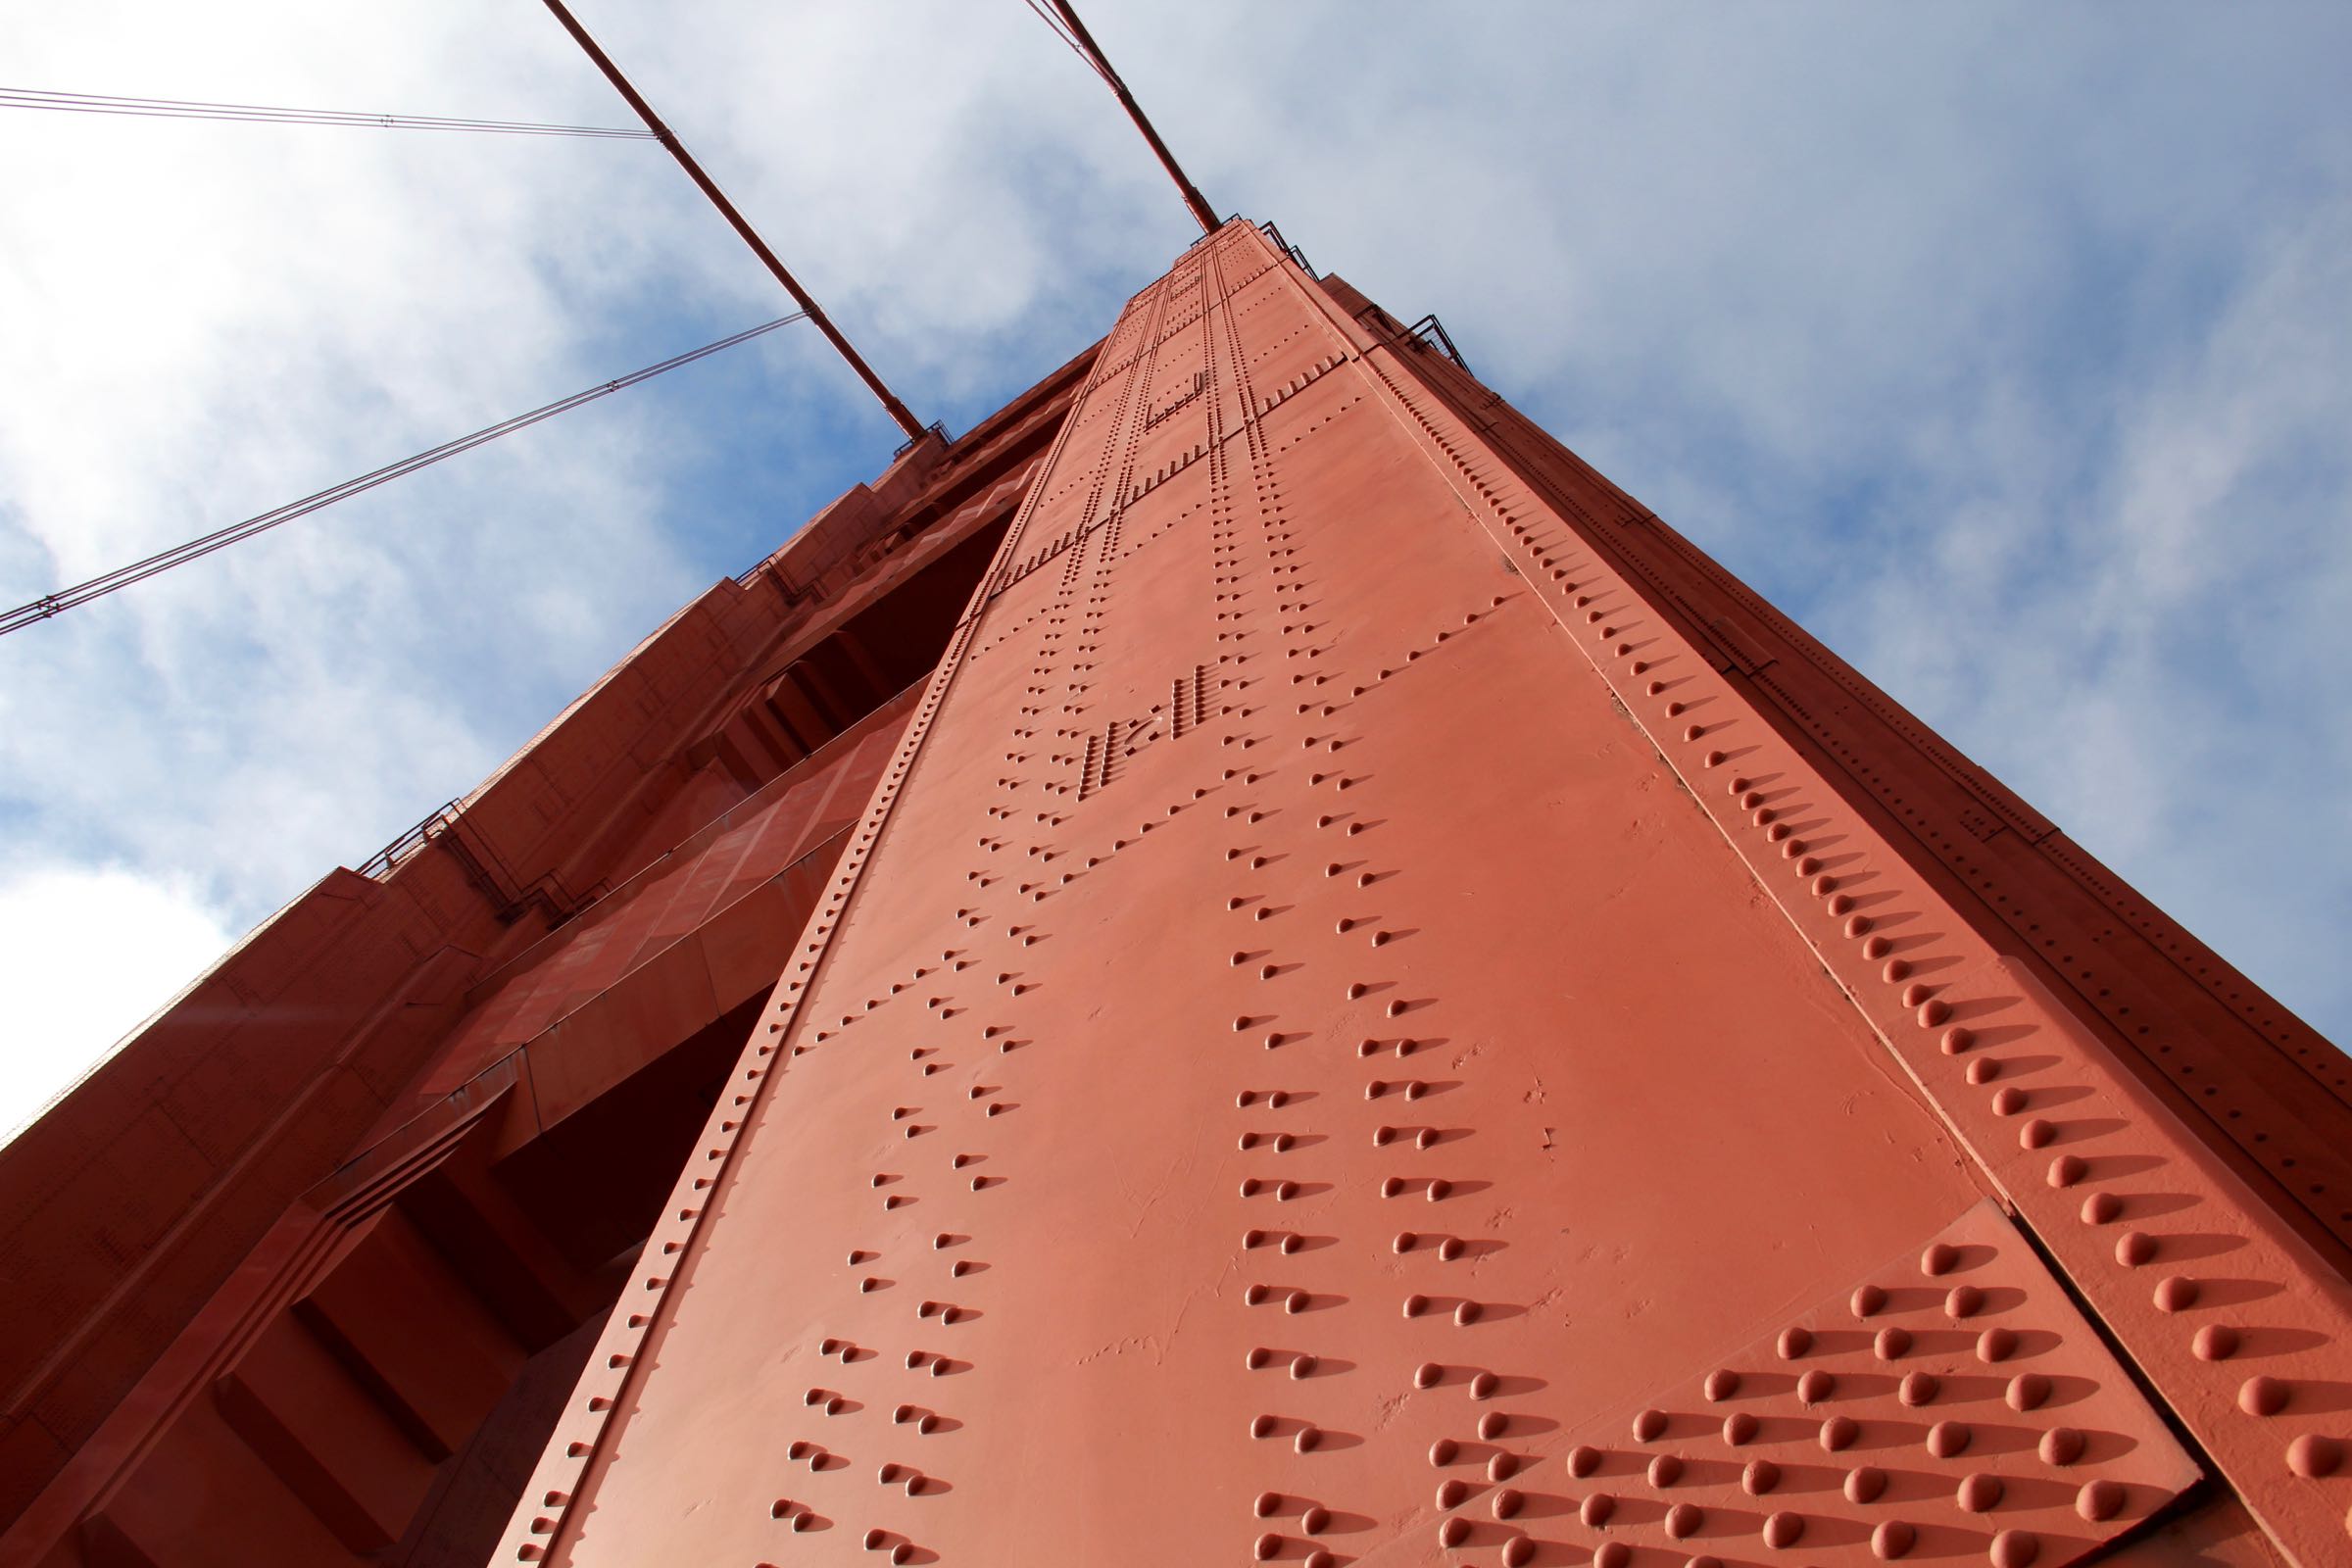 Pfeiler der Golden Gate Bridge, San Francisco, Kalifornien, USA